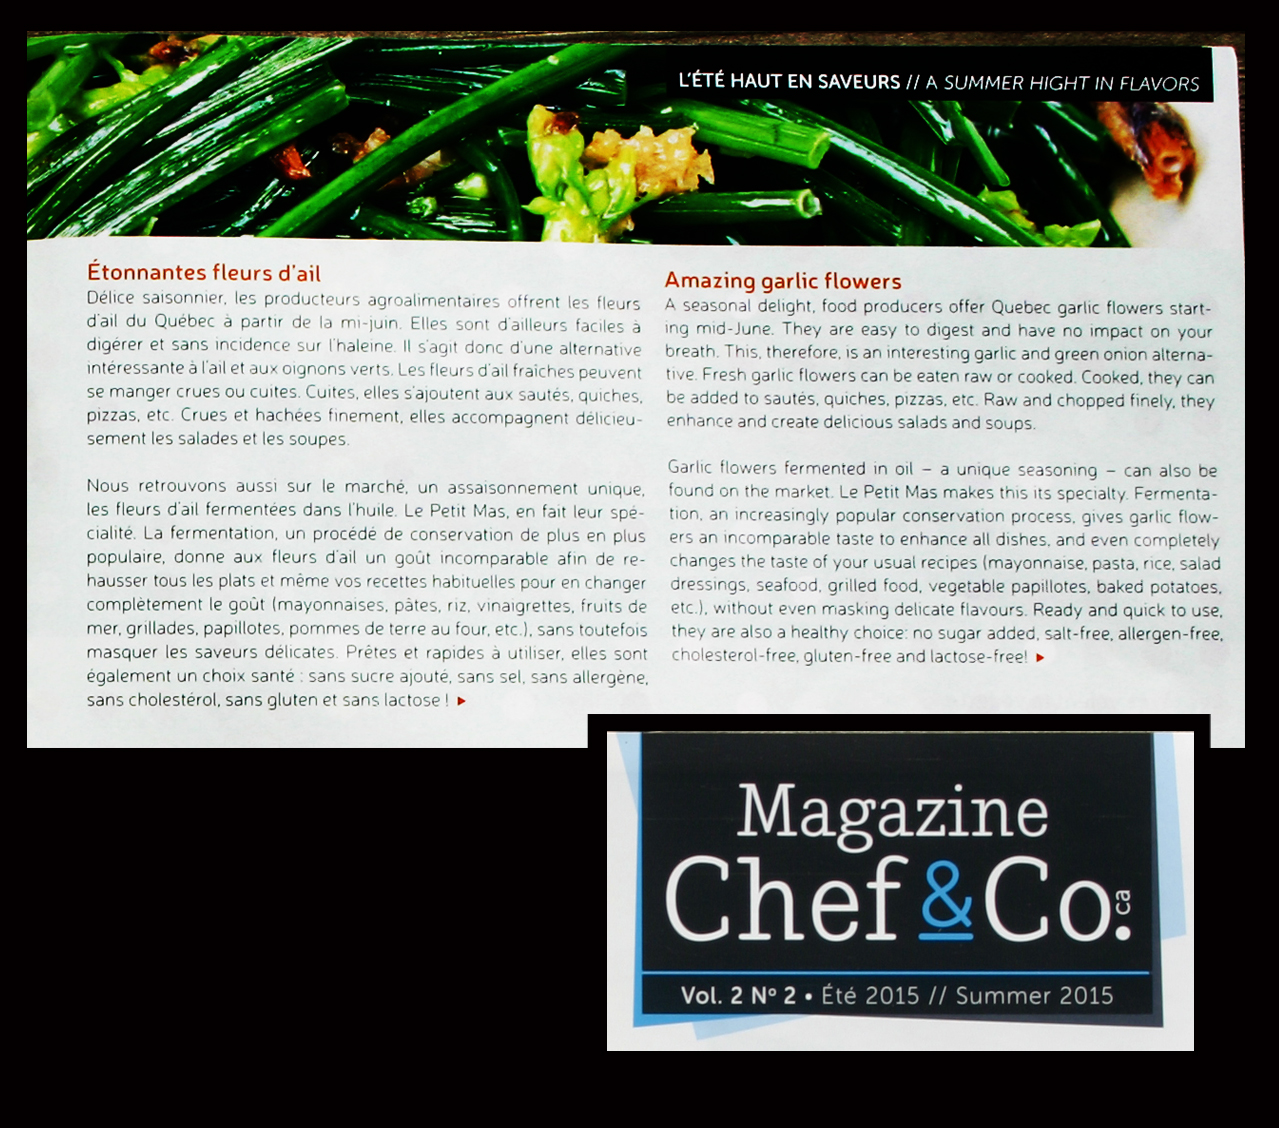 Le Petit Mas - Ils parlent de nos fleurs d'ail - Magazine Chef & Co